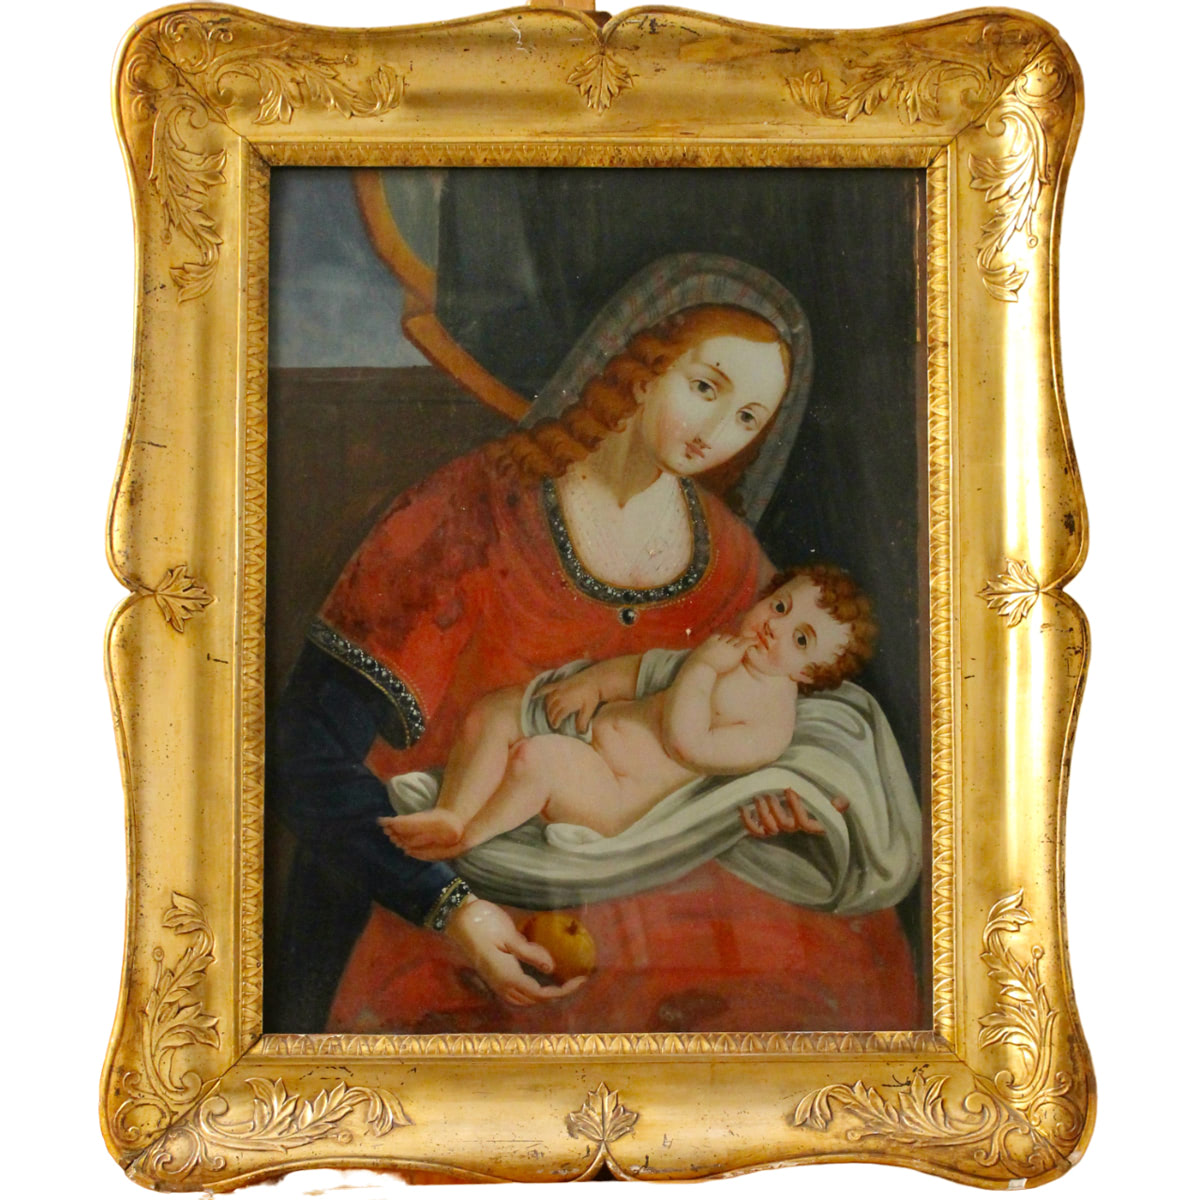 Scuola siciliana del XVIII secolo "La Madonna con il Bambino" - 18th century Sicilian school "The Madonna with Child"